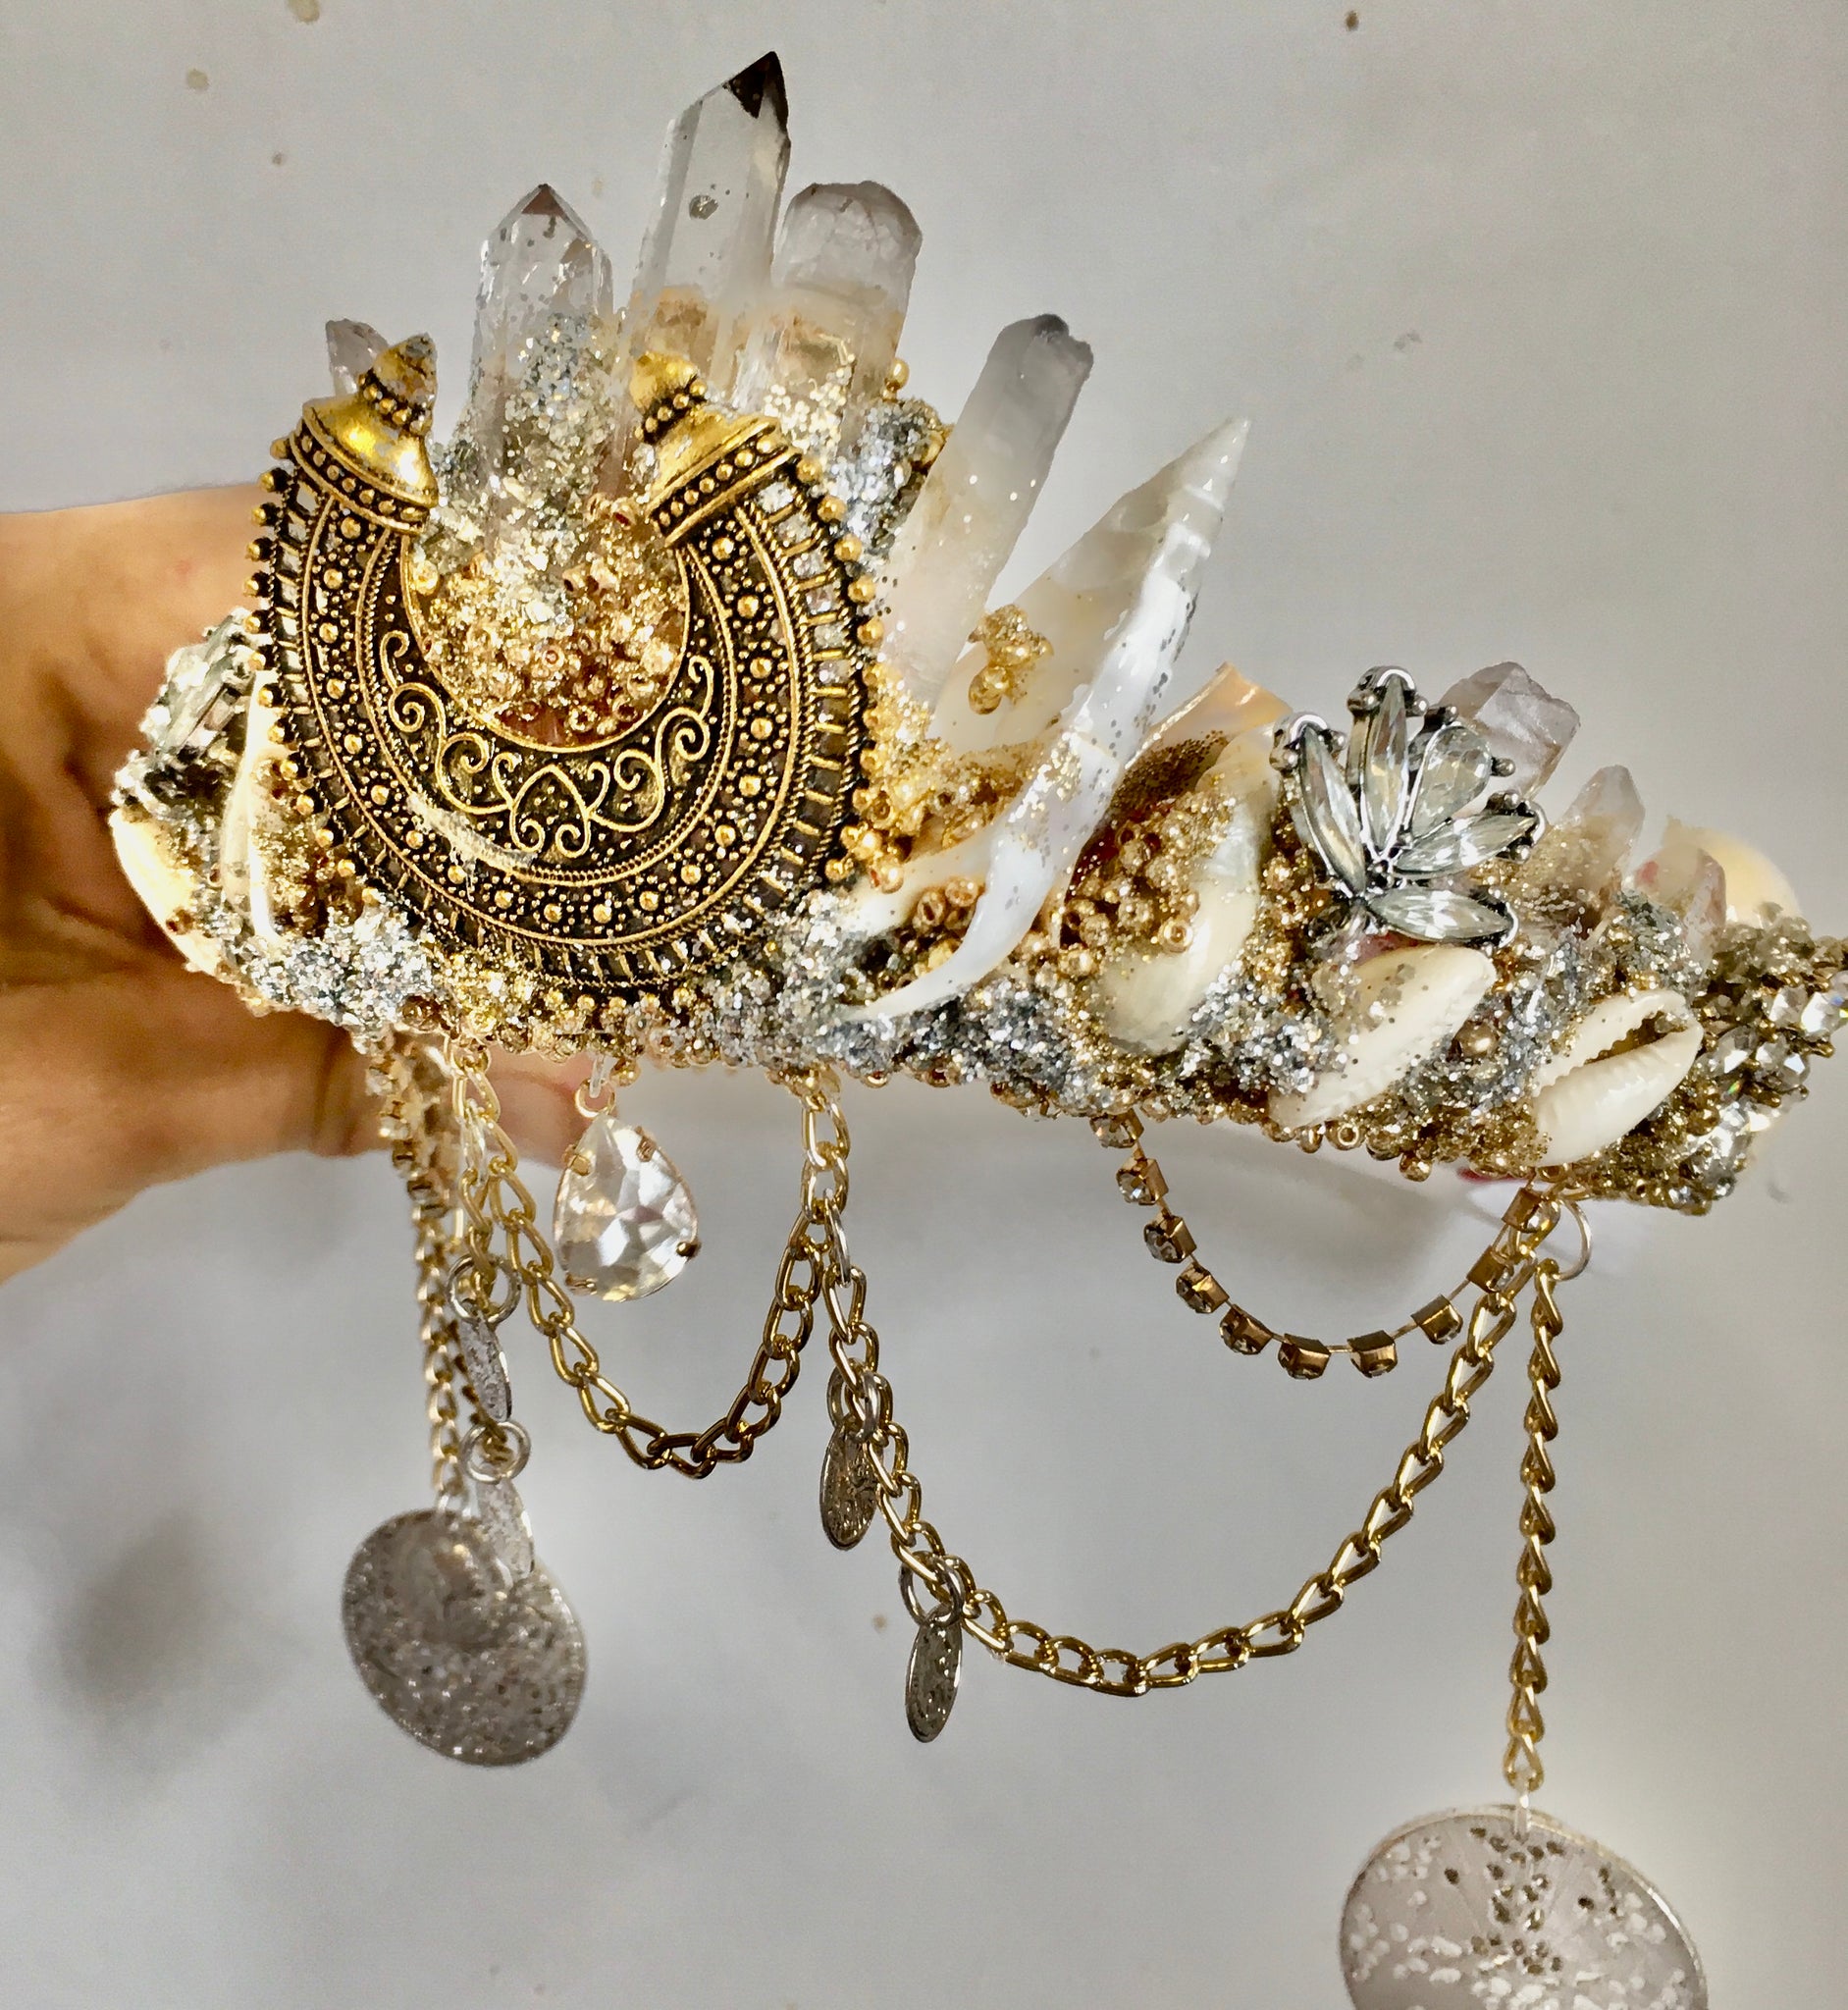 Golden moon crystal & shell mermaid crown ~ Pre order